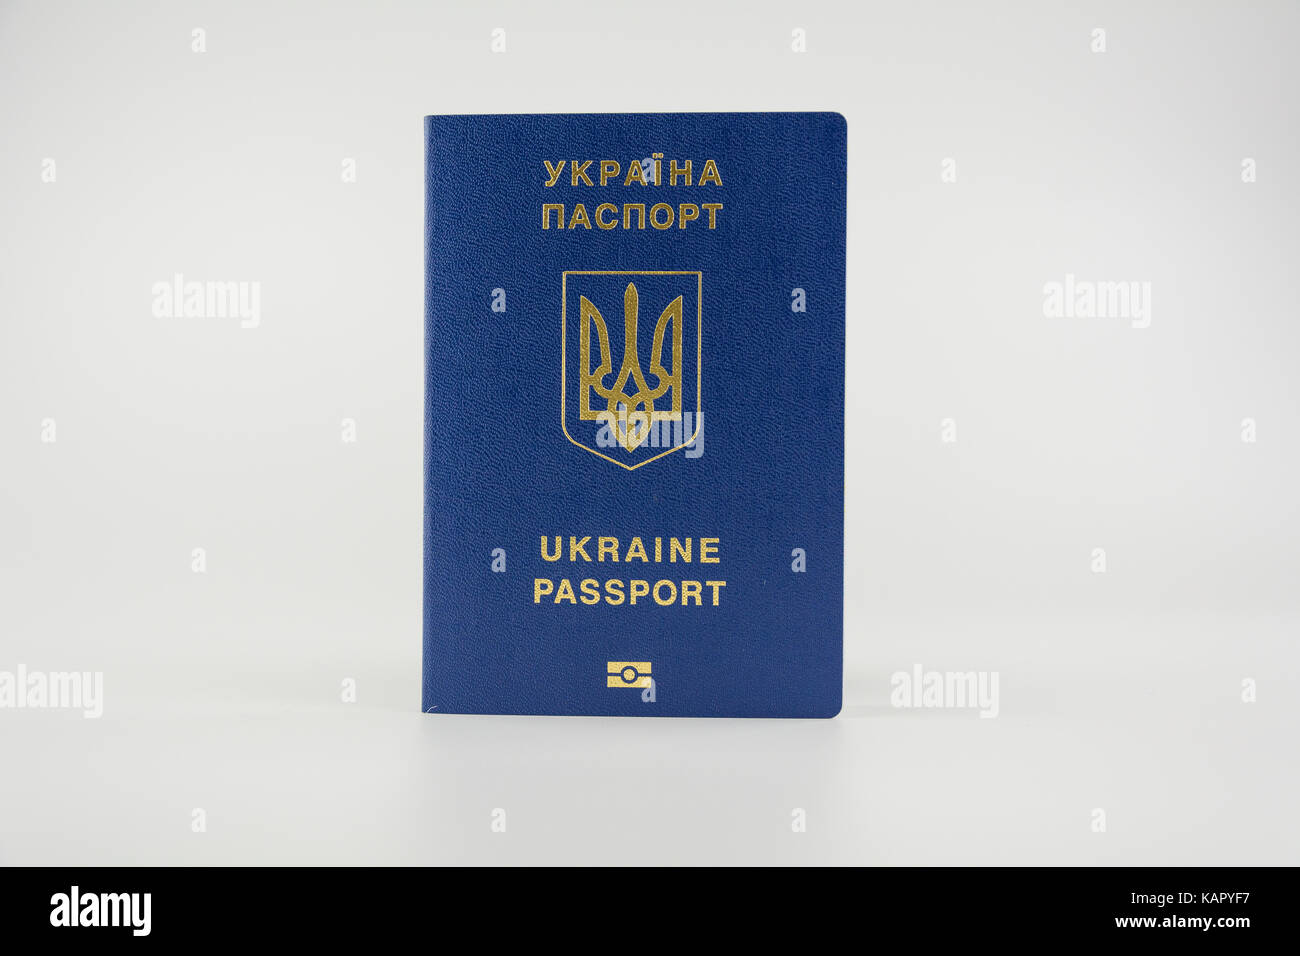 Ukraine passport Banque de photographies et d'images à haute résolution -  Alamy